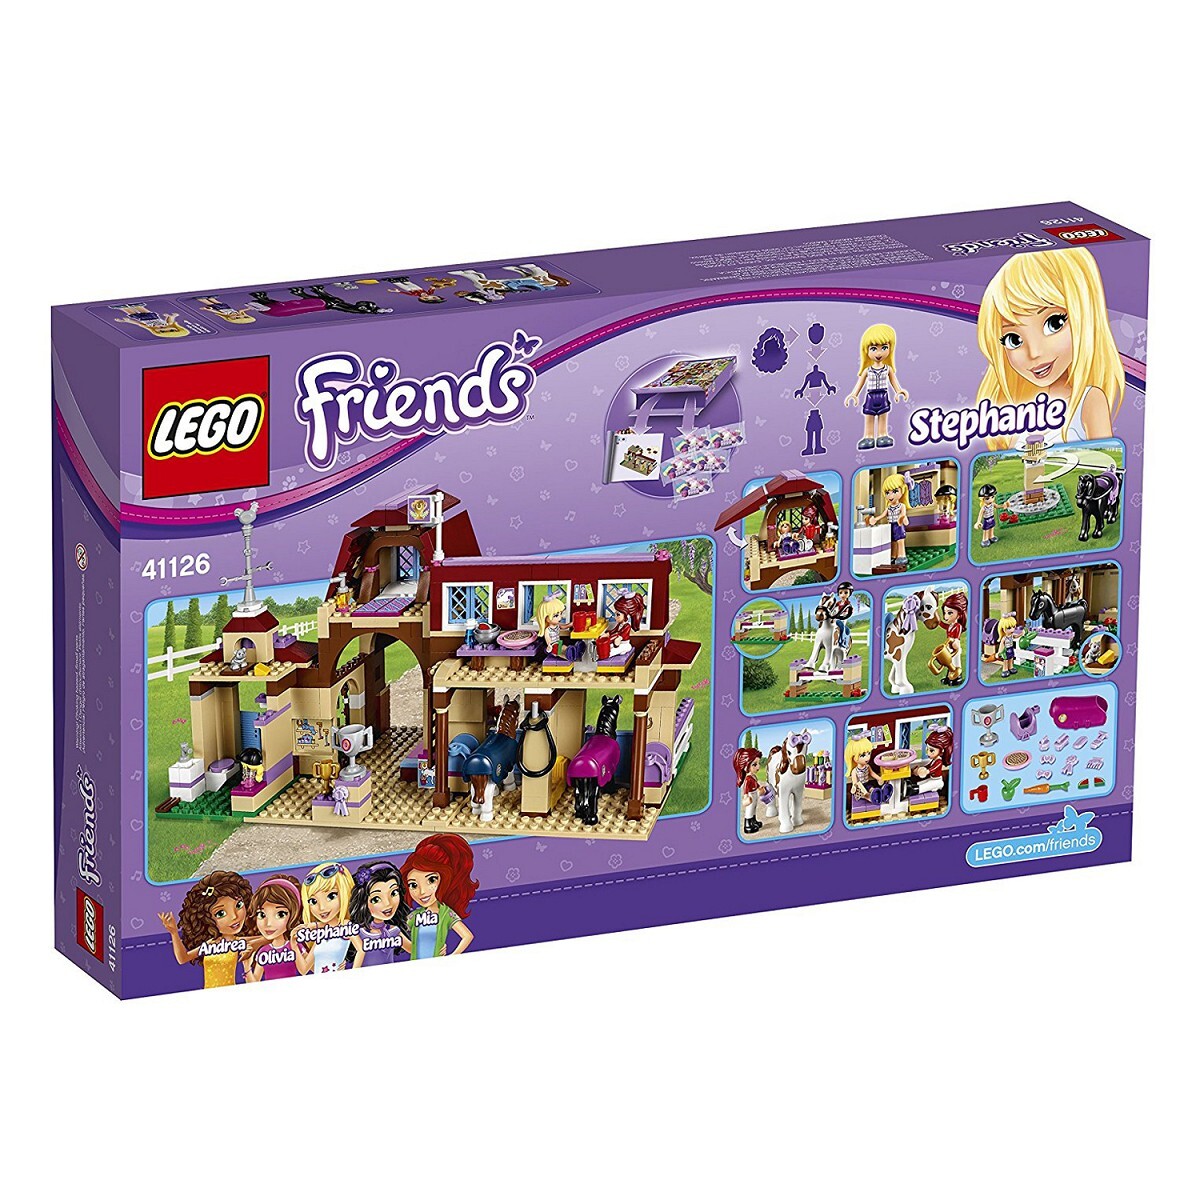 Đồ chơi LEGO Friends - câu lạc bộ cưỡi ngựa 41126 (575 Mảnh Ghép)